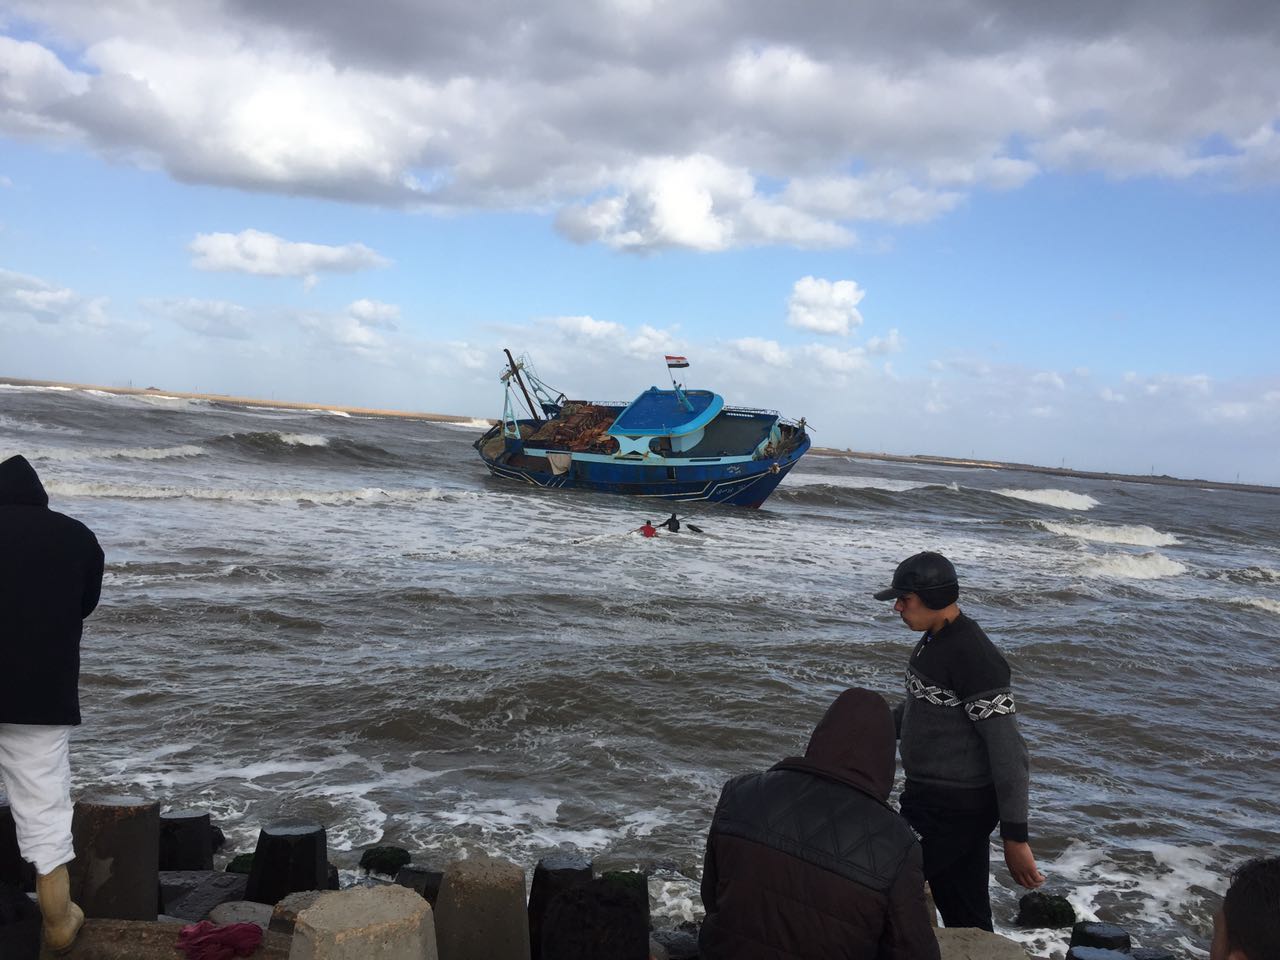 1-مركب الصيد التي شطحت وعملية انقاذ الصيادين بالحبال